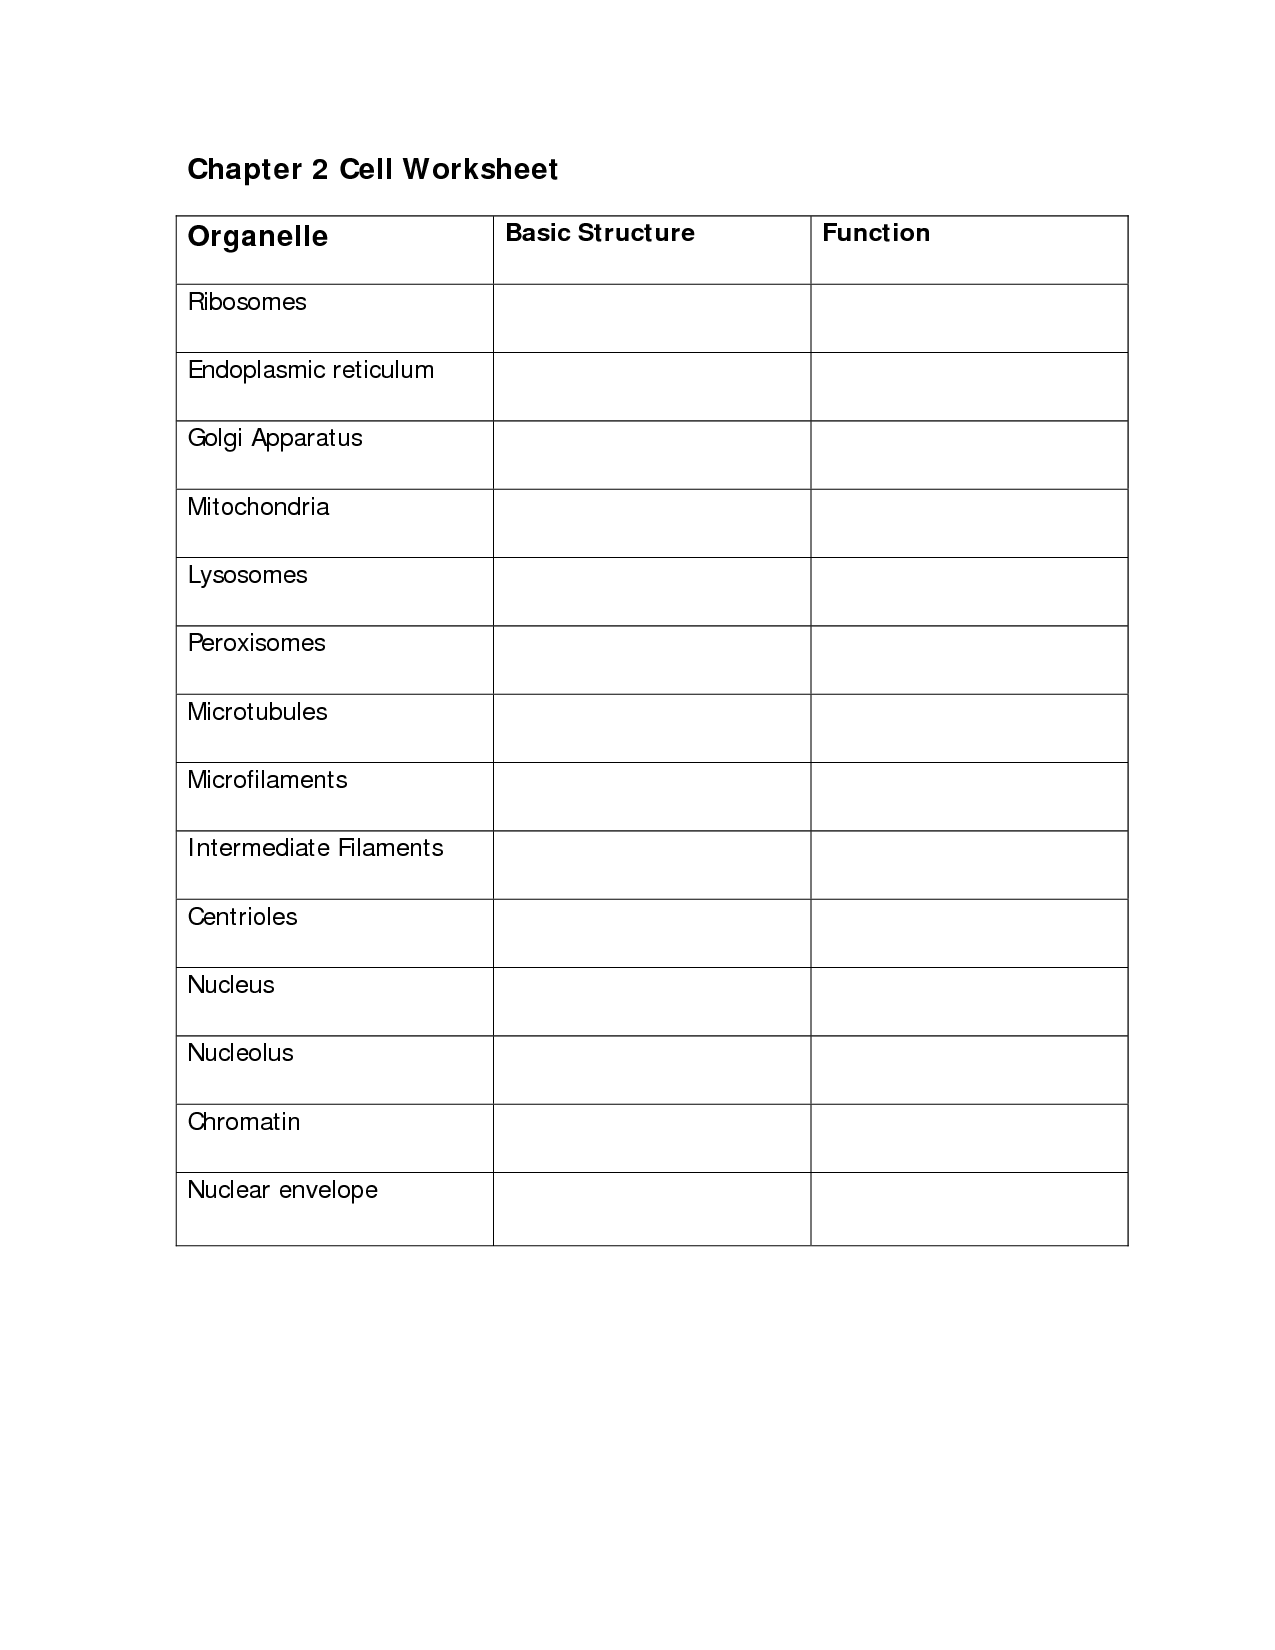 Cells and Organelles Worksheet Image